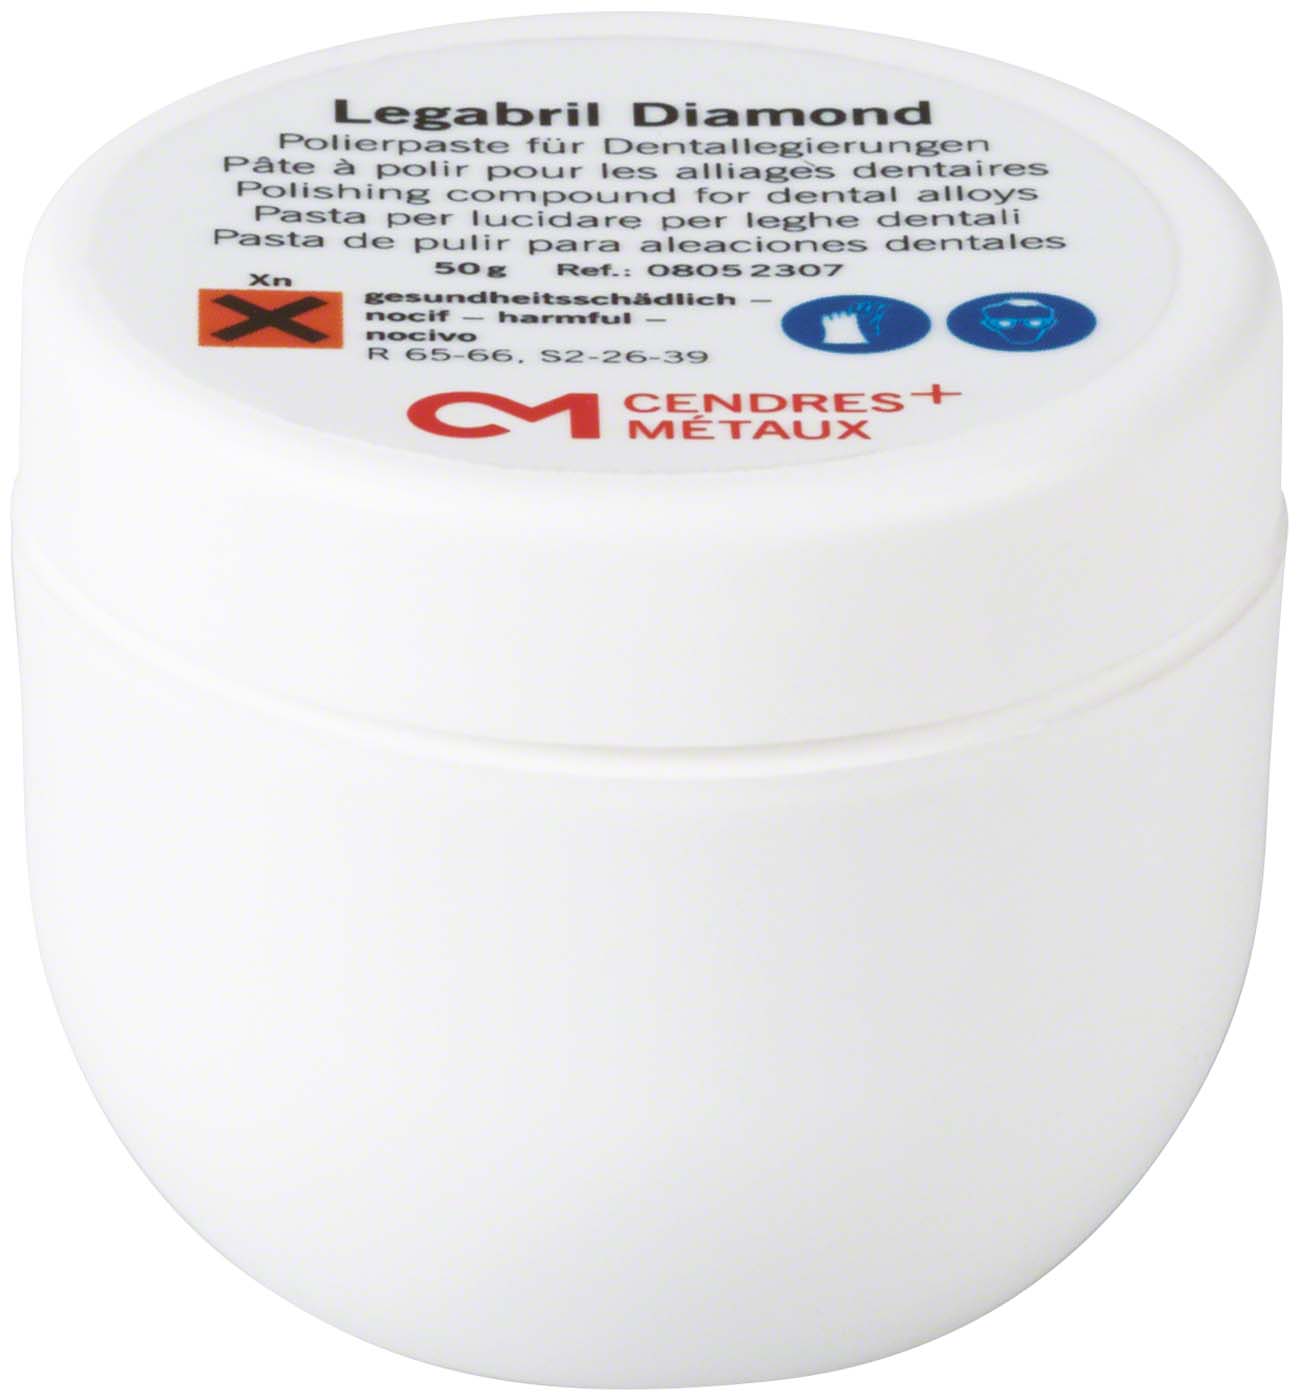 Legabril Diamond Wegold Edelmetalle